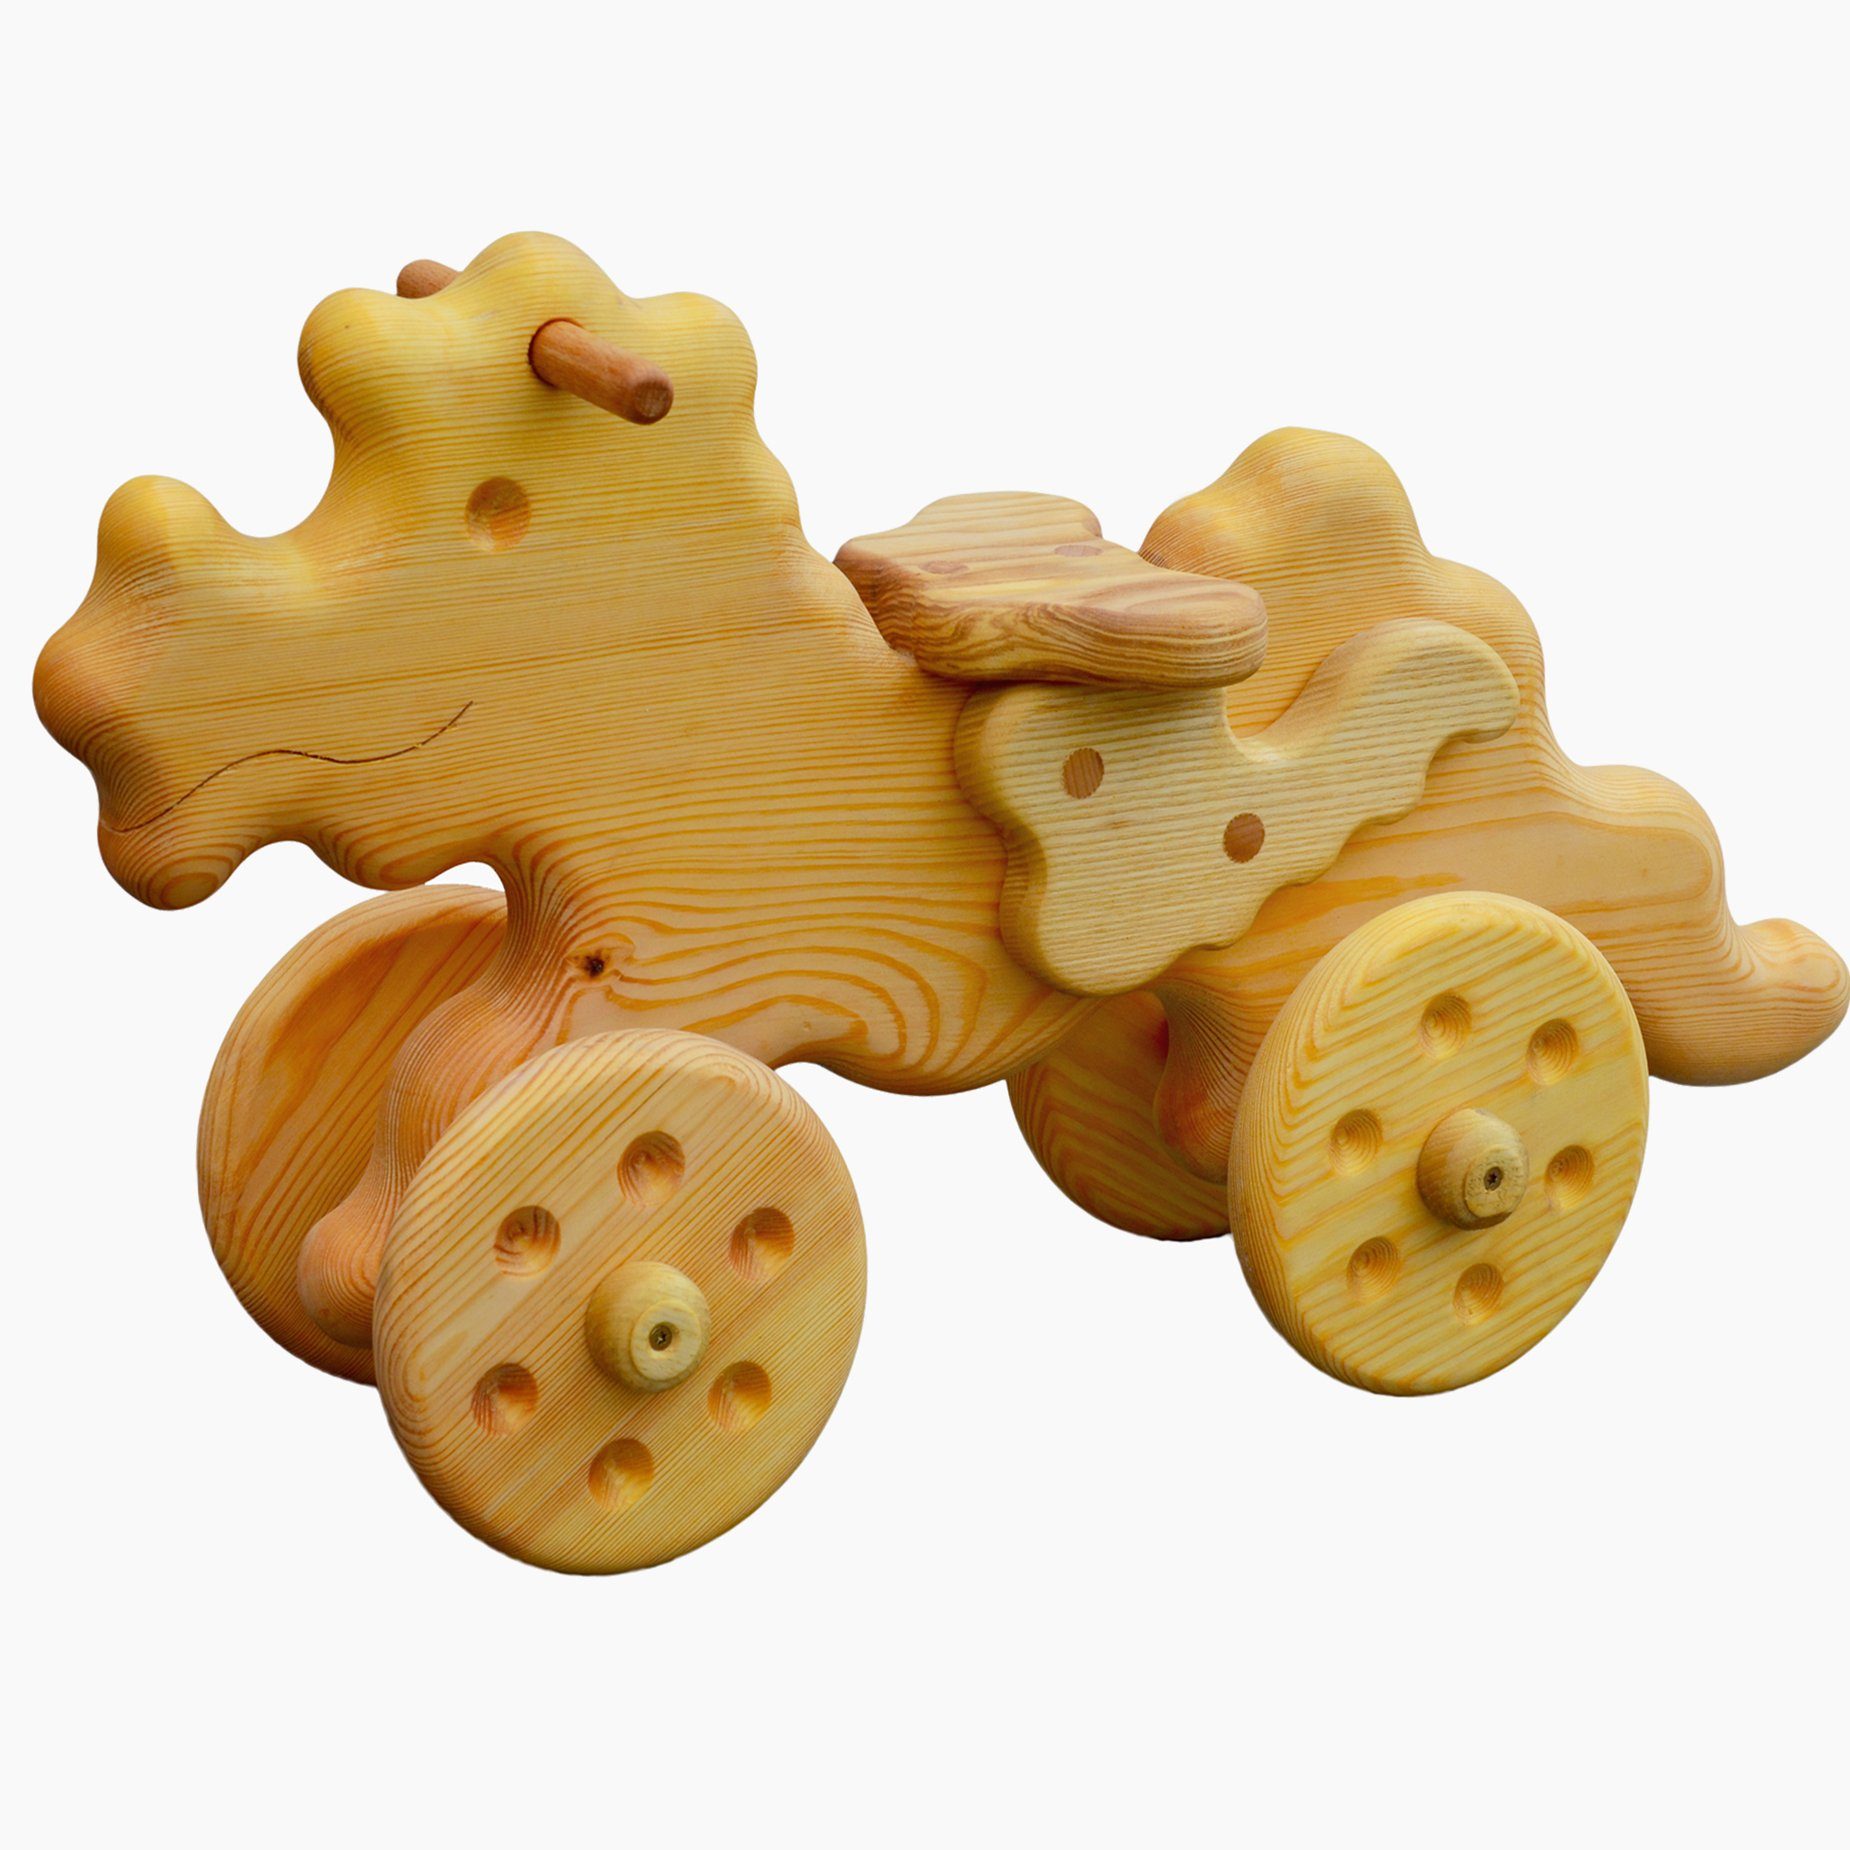 Madera Spielzeuge Laufrad Madera Laufdrache Kiefernholz, Made in Germany, für Kinder ab 18 Monate geeignet | Laufräder